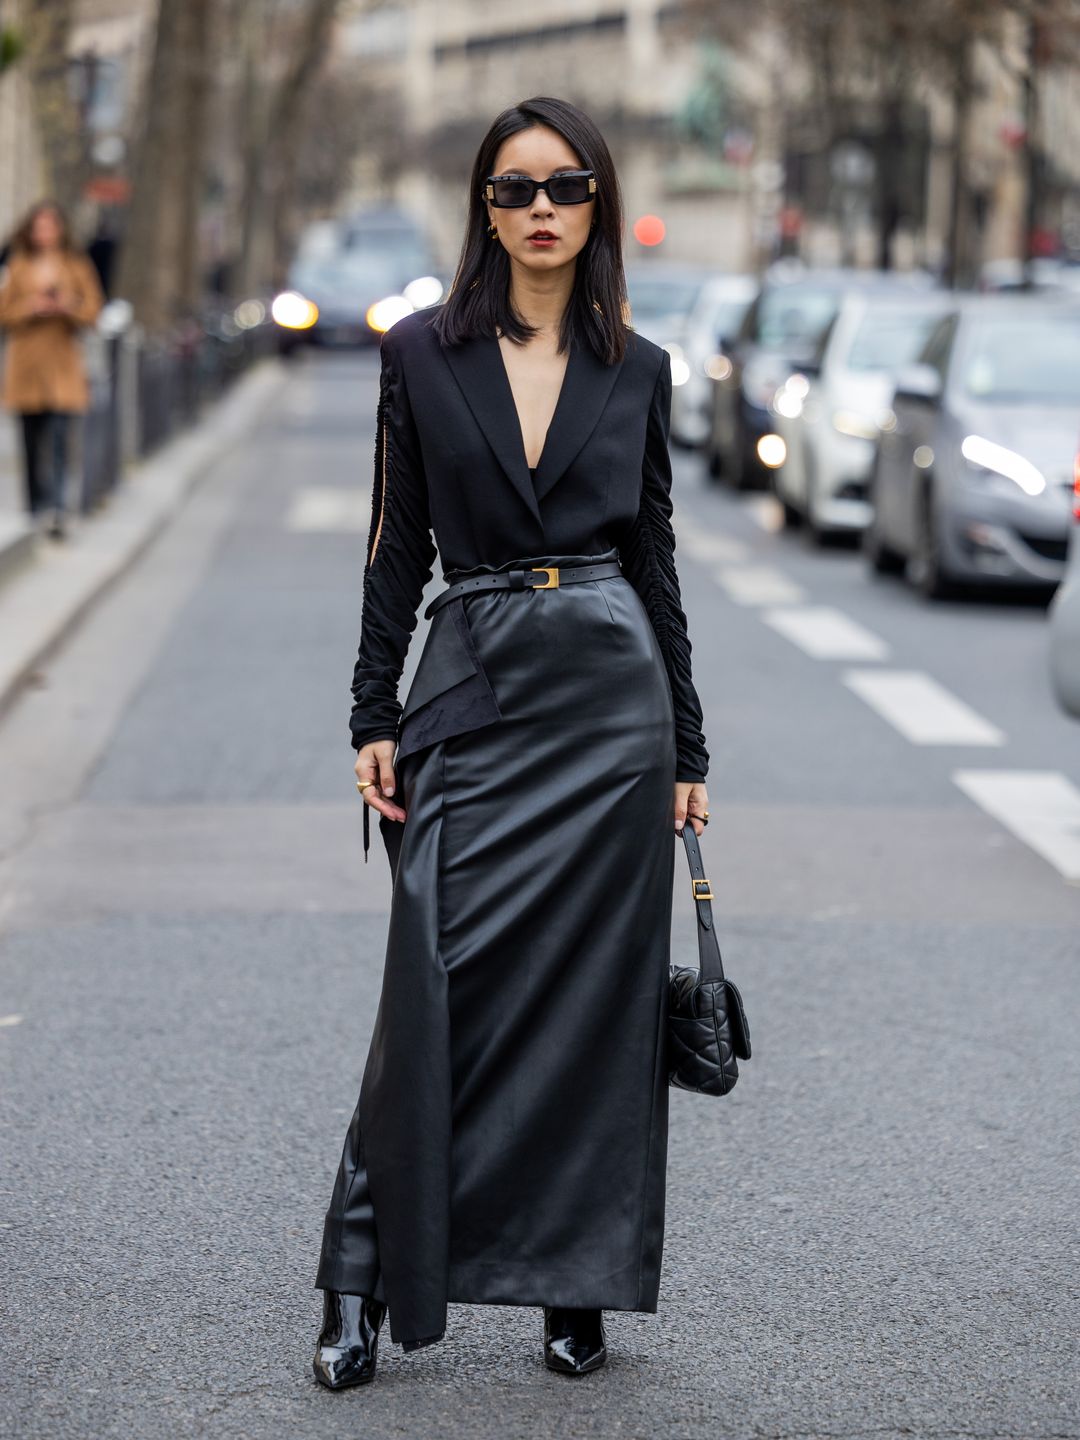 Satin Slip Skirt curated on LTK | Satin skirt outfit, Long sleeve black maxi  dress, Satin slip skirt